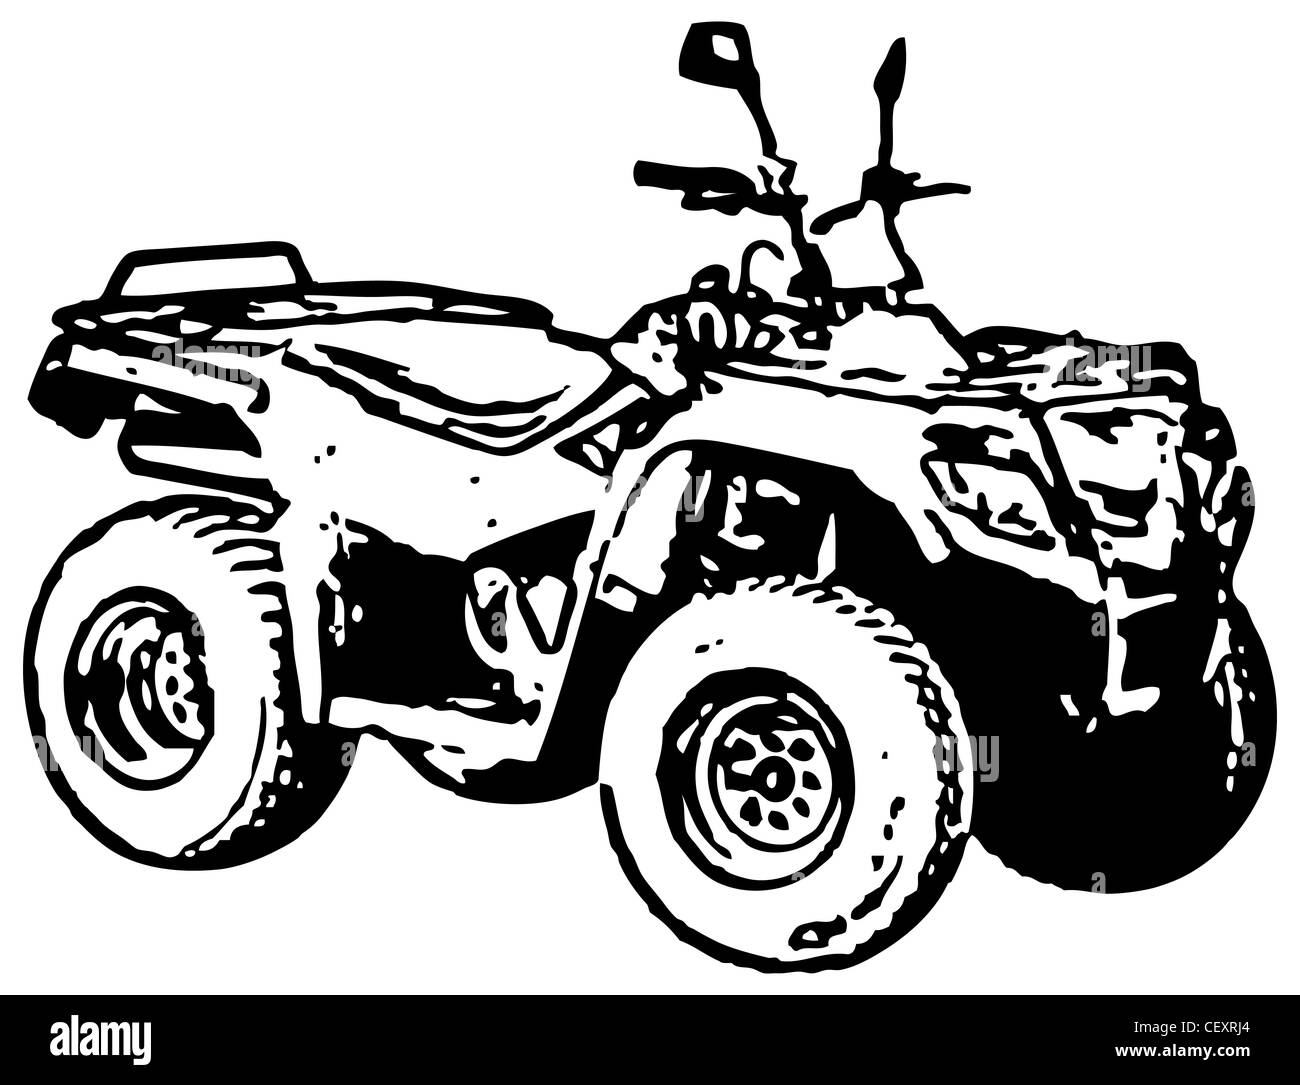 L'image monochrome rugueux - moto à quatre roues motrices Banque D'Images